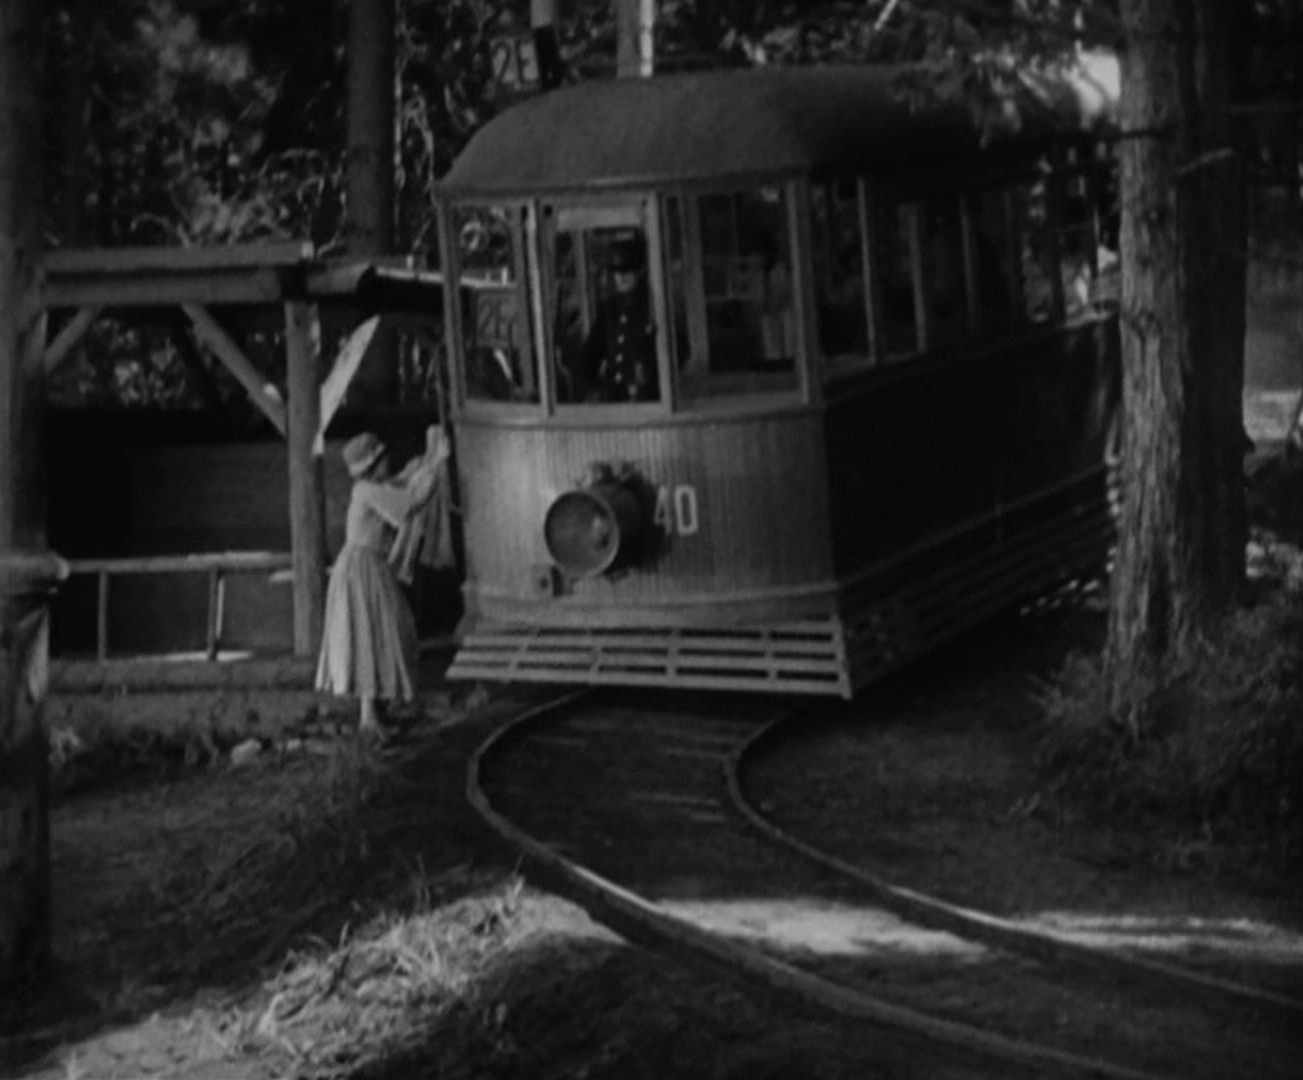 Sunrise - Friedrich Wilhelm Murnau - Janet Gaynor - wife - streetcar - tram - train - forest